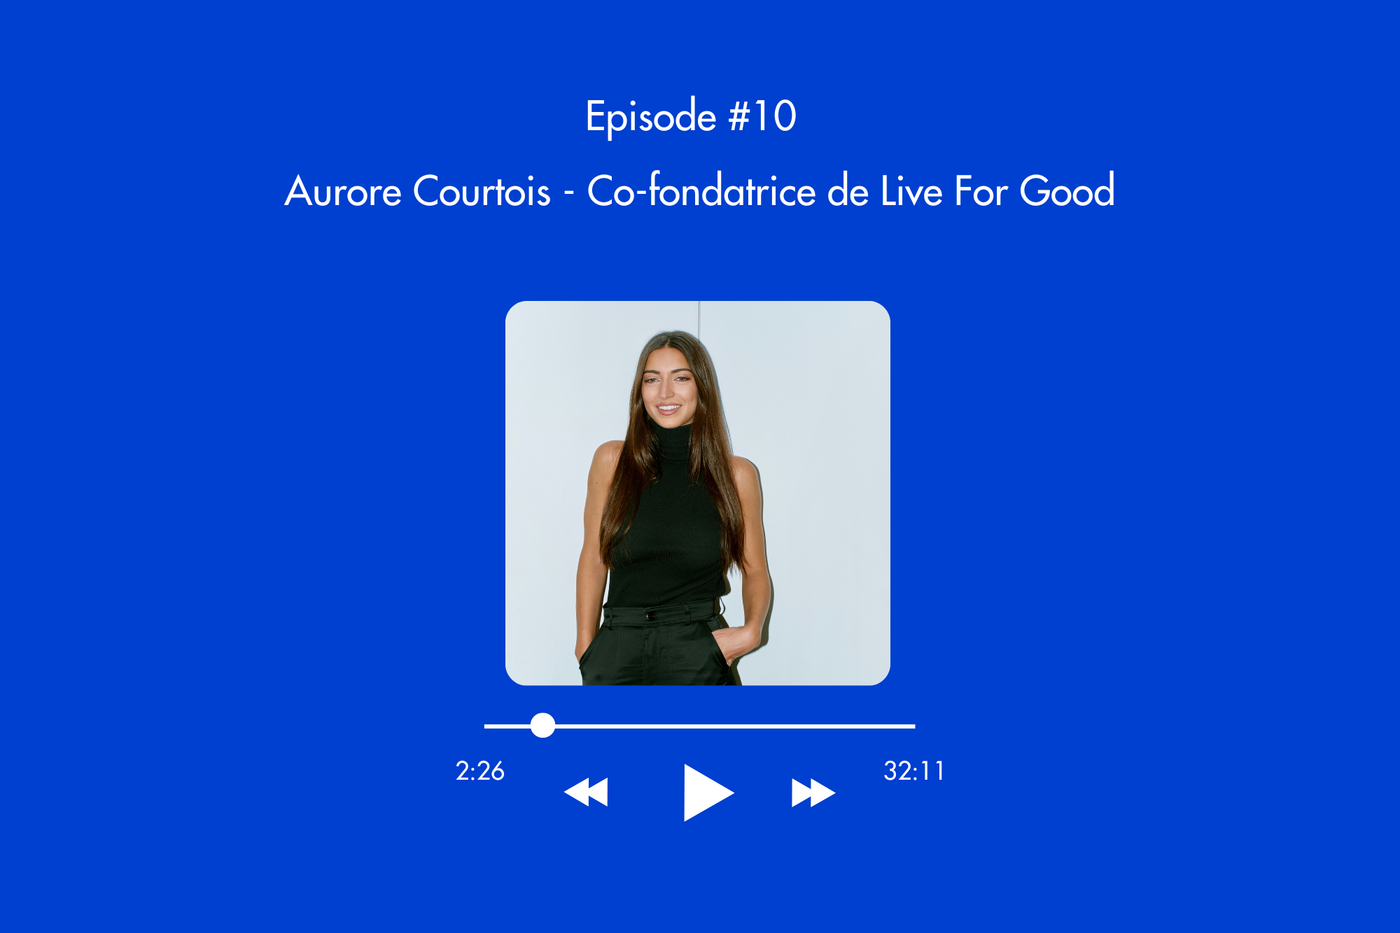 Épisode 10 : Créer la nouvelle génération d'entrepreneurs à impact - Live For Good avec Aurore Courtois